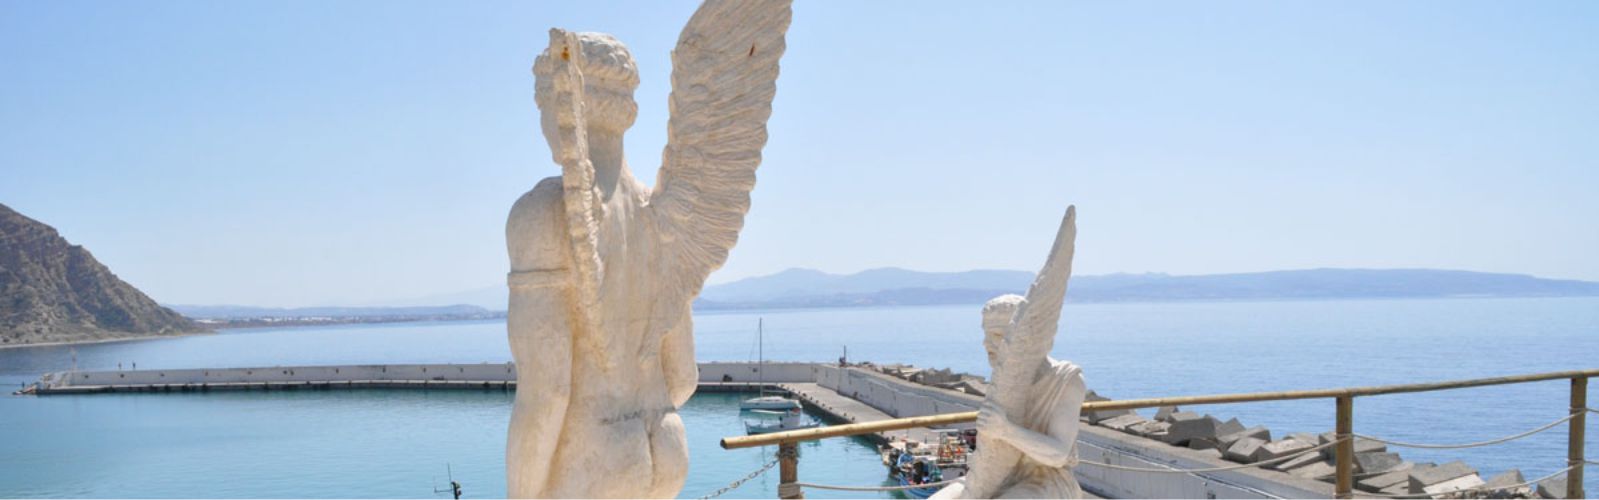 Panorama van de bekende legendes Daedalus & Icarus